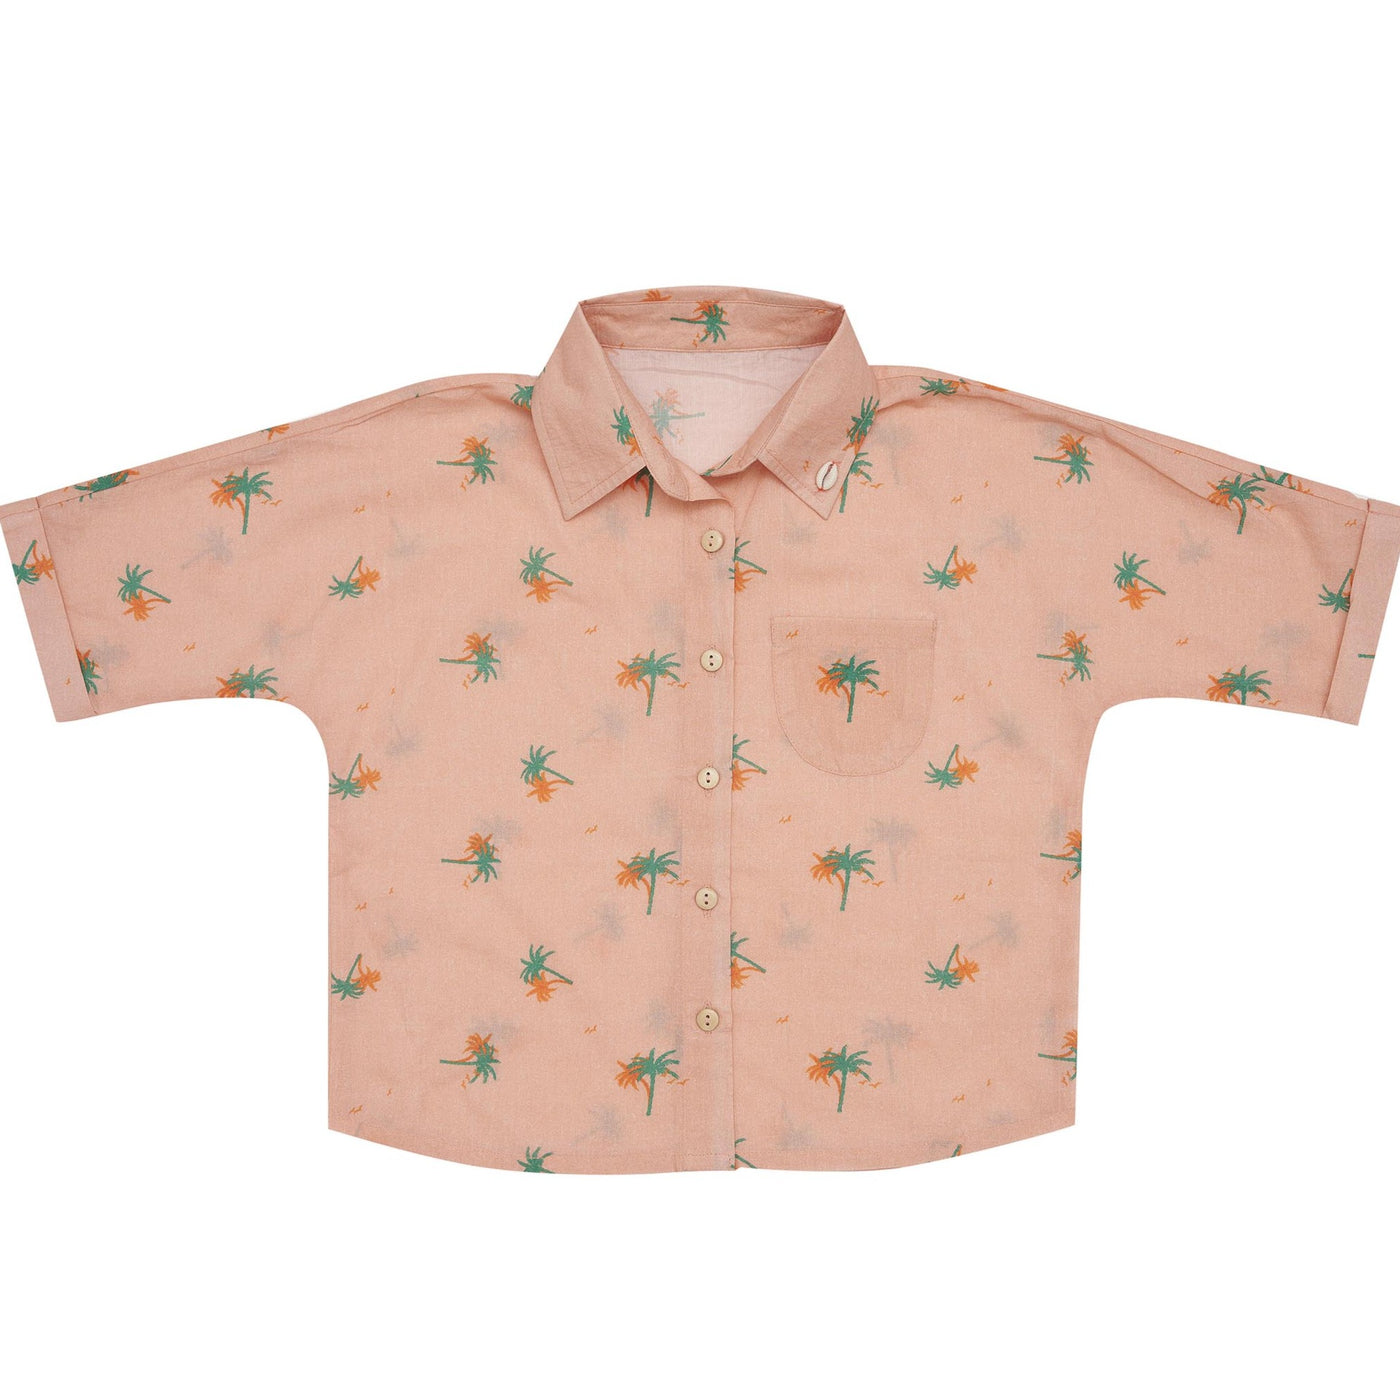 Nia Shirt - Tropical Peach Day Dream Short Sleeve Shirt Bella & Lace 